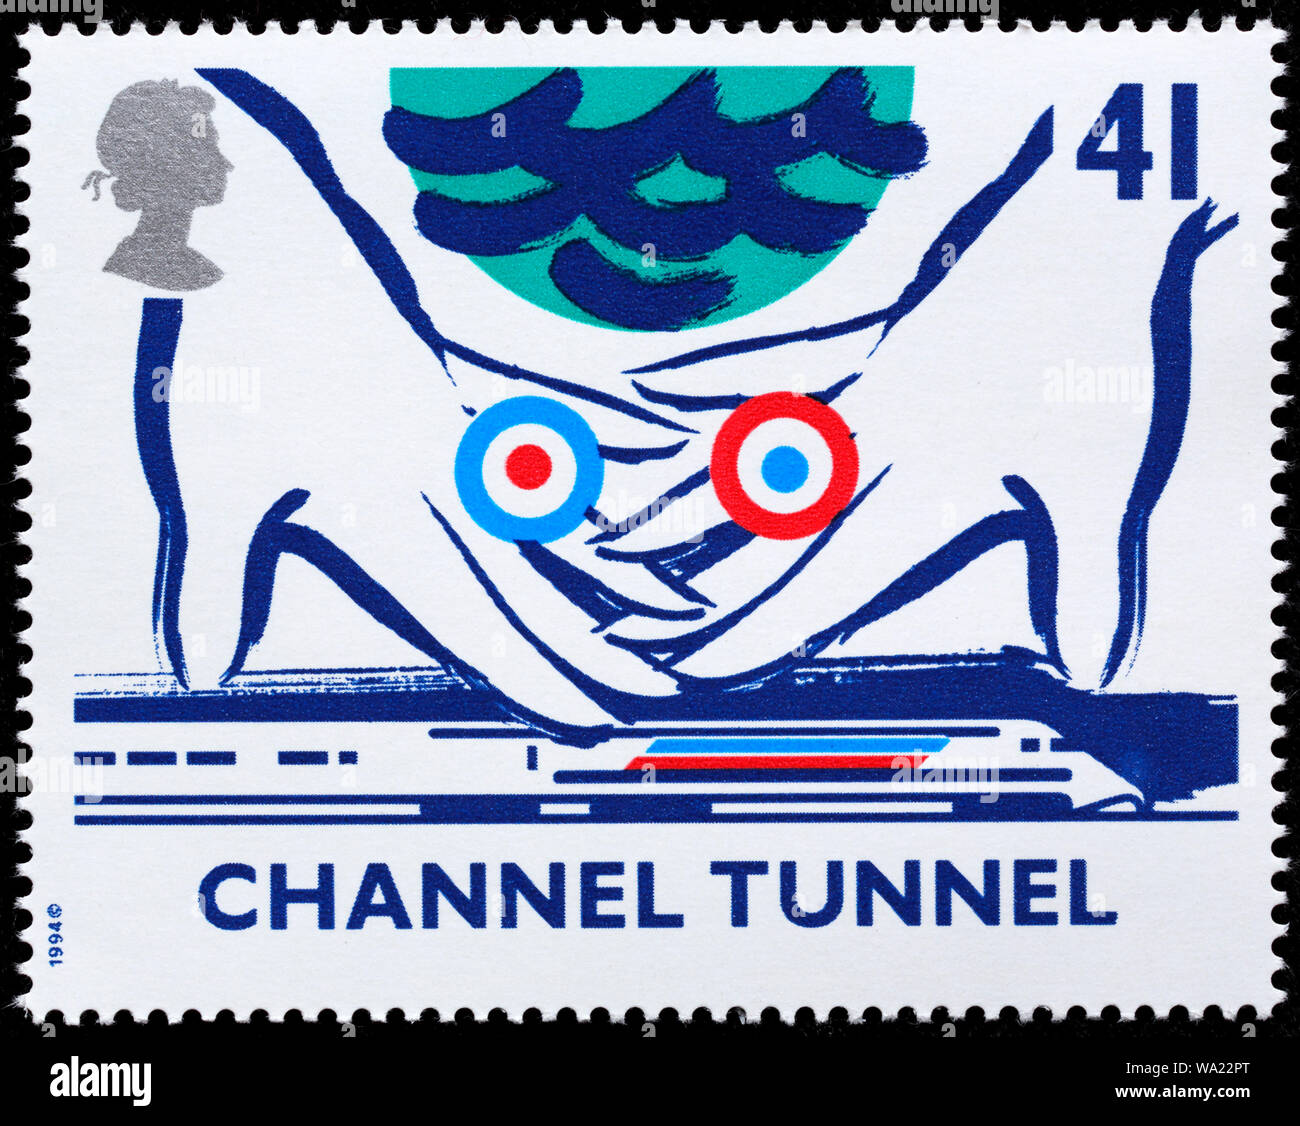 Channel Tunnel 1994 Banque d'image et photos - Alamy